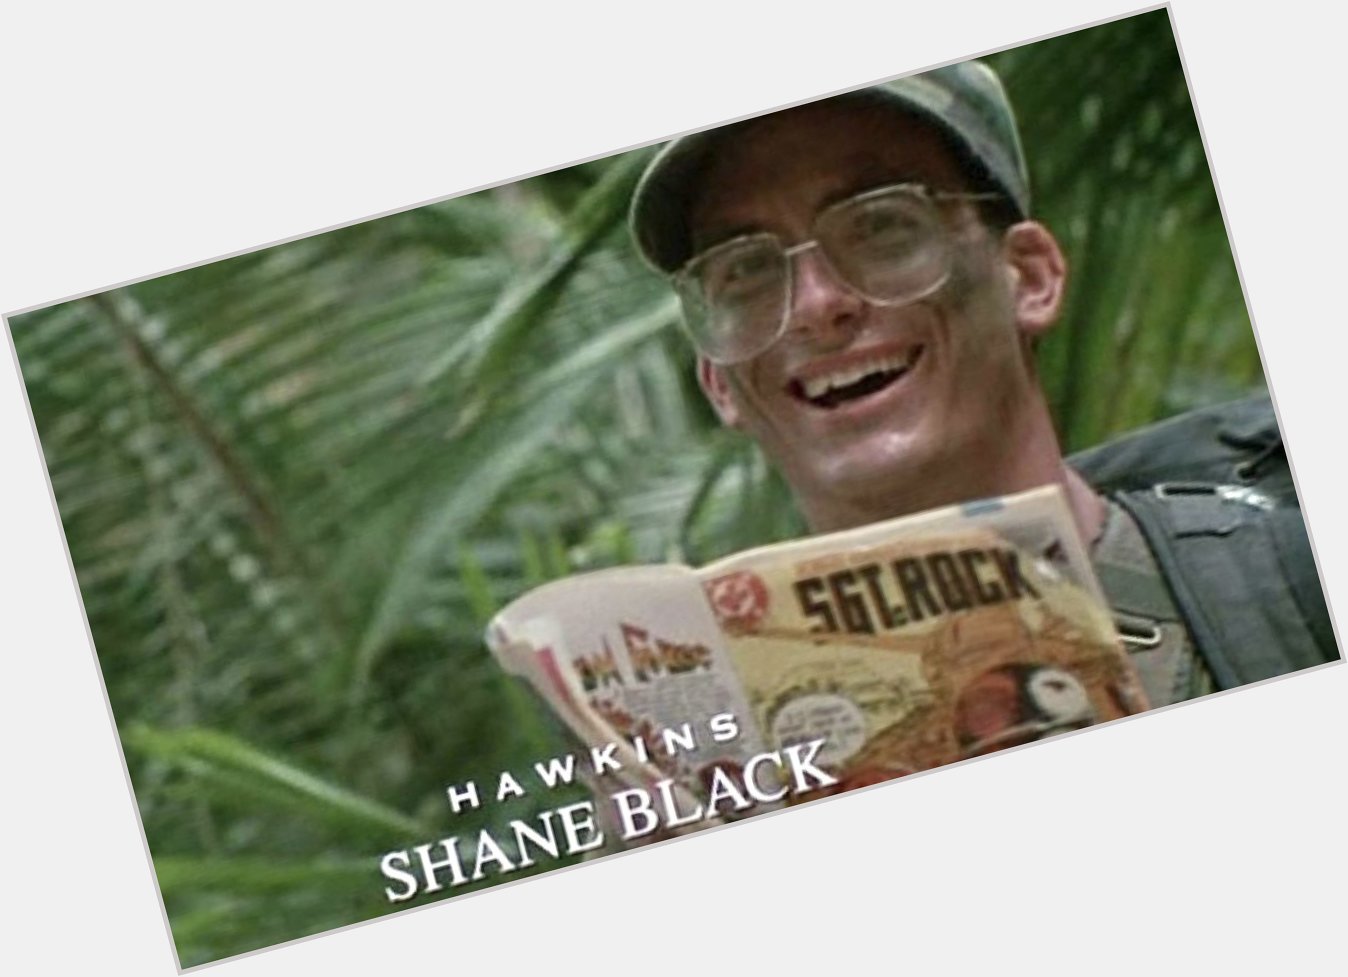 Happy Birthday to Shane Black!   